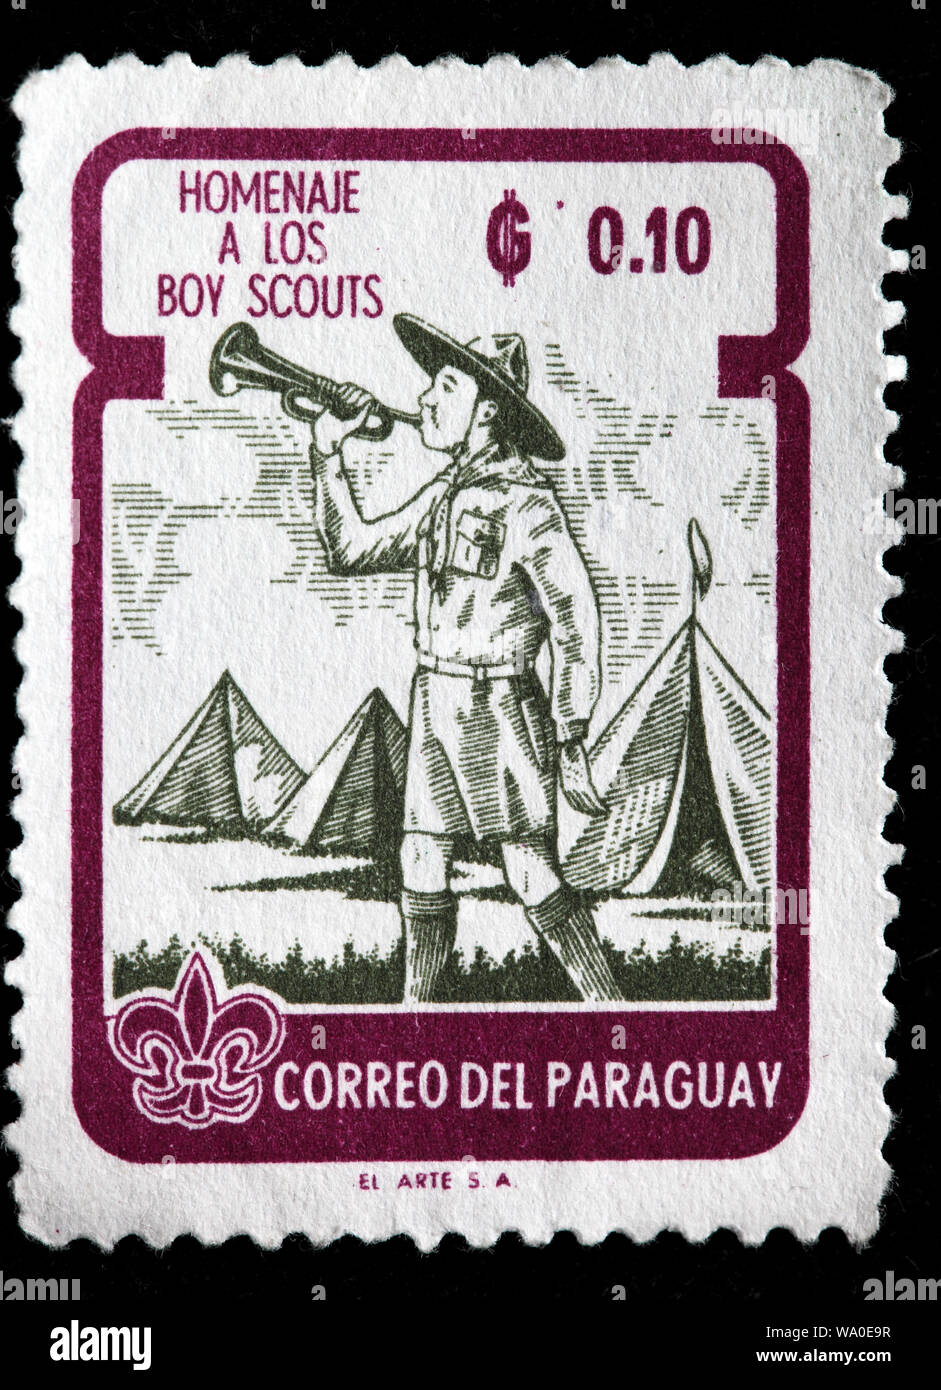 Boy Scouts, timbre-poste, Paraguay, 1962 Banque D'Images